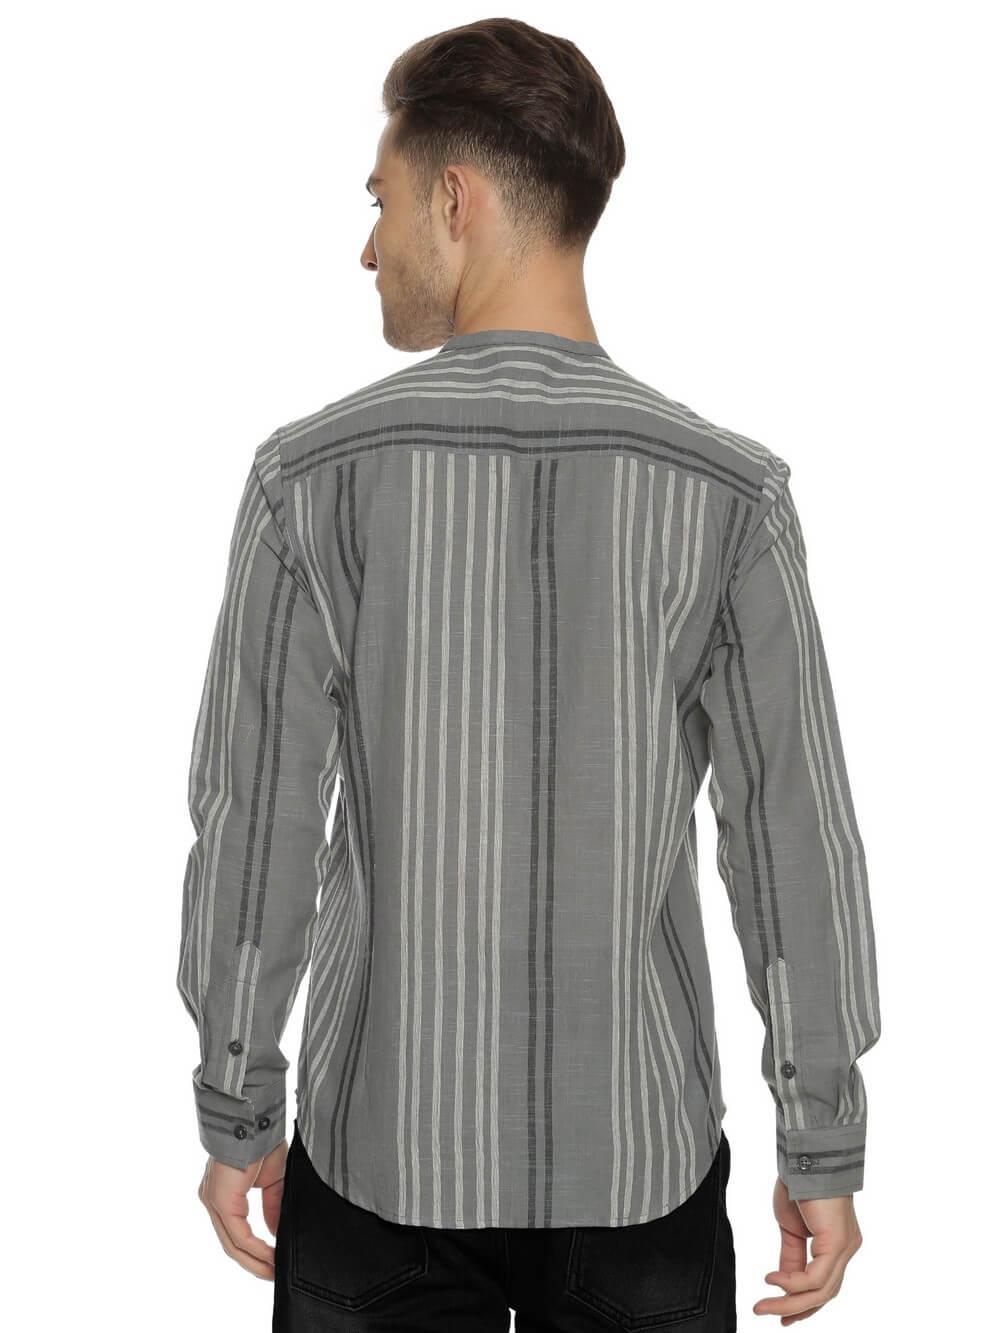 Handloom Woven Steel Gray Stripes Men Slim Fit Shirt WeaversKnot 